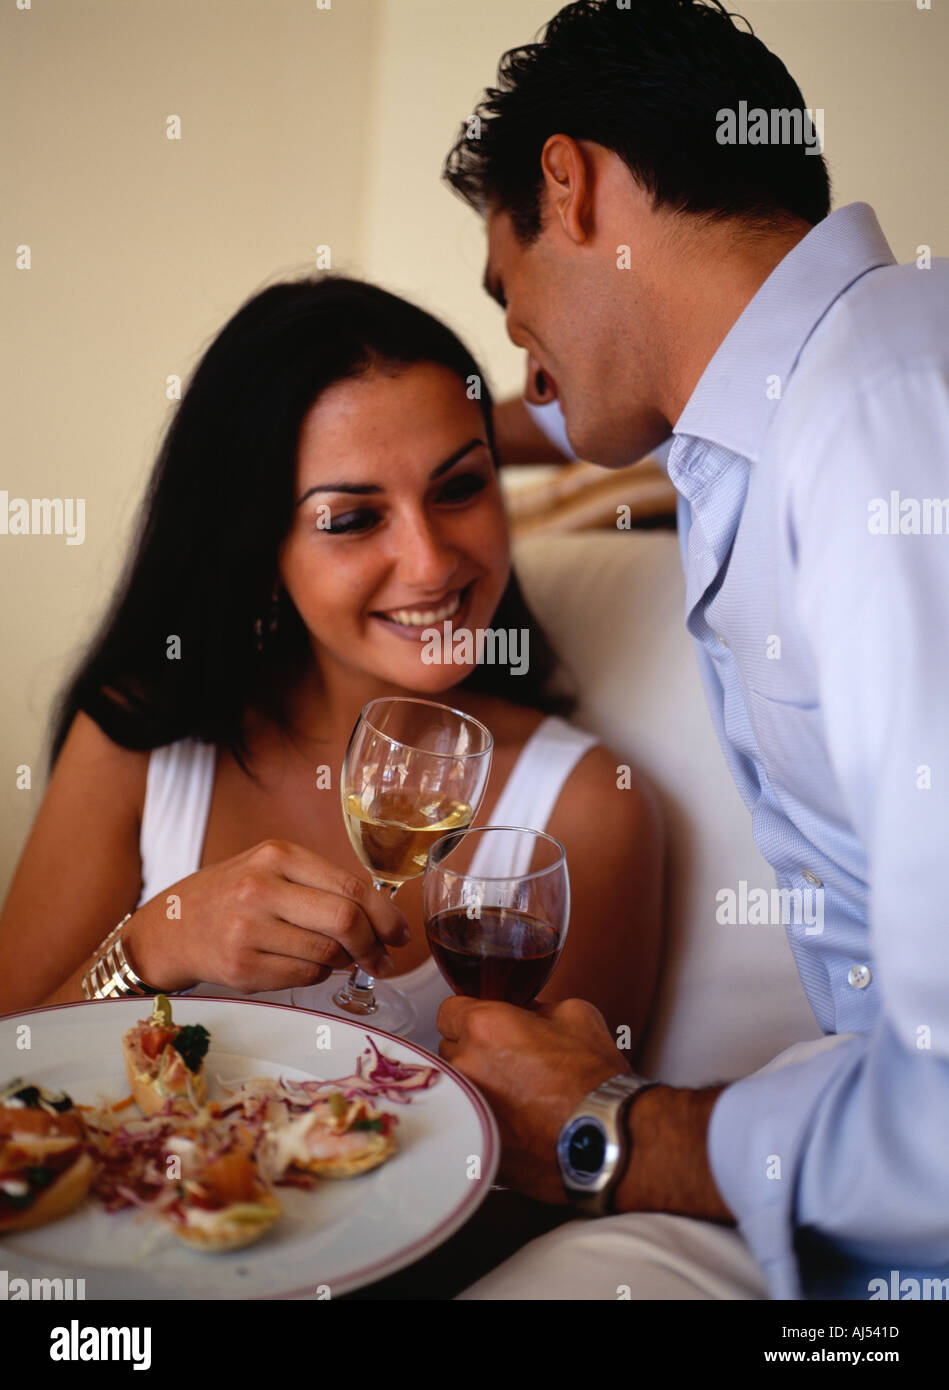 Jeune couple aimant profiter des tapas et boire winein Espagne tapa Banque D'Images